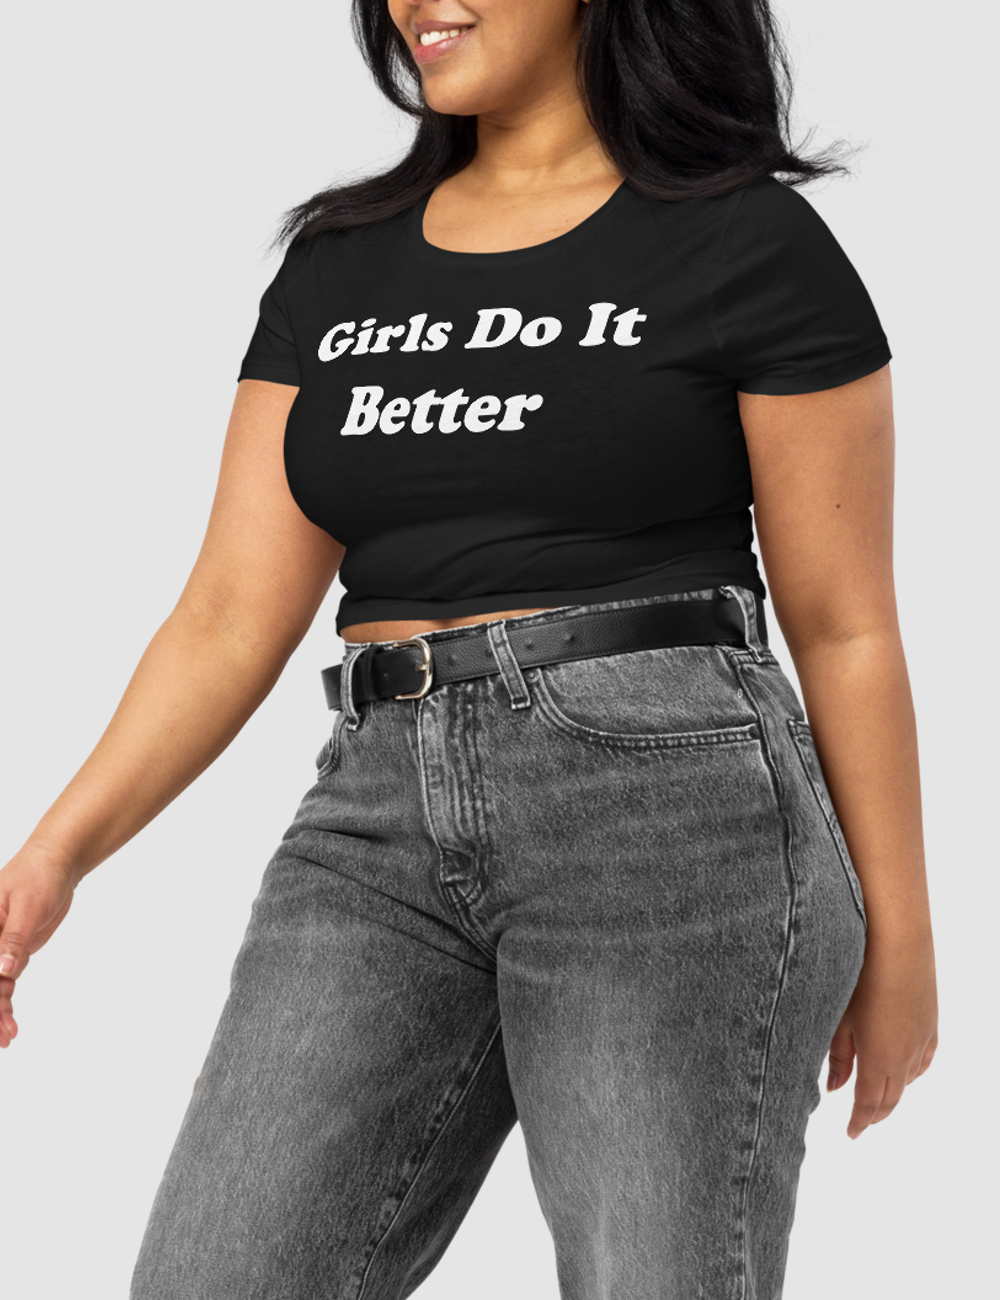 Girls Do It Better Women's Fitted Crop Top T-Shirt OniTakai